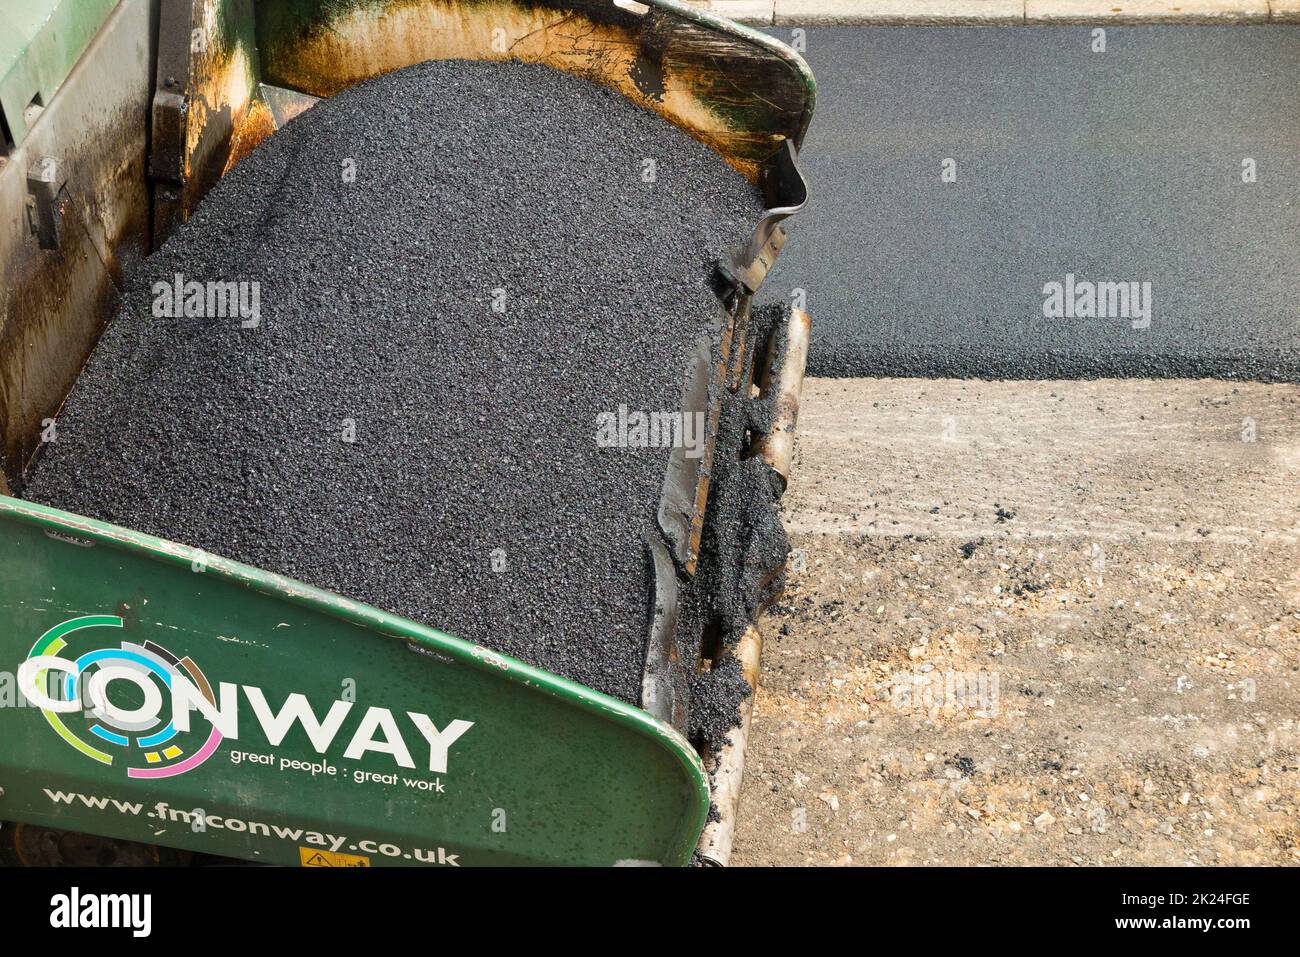 Tarmacadam viene distribuito da una finitrice asfaltata durante il ripavimentamento di una strada residenziale a Twickenham, Greater London, UK. La superficie è stata riaffilata dopo la rimozione della precedente superficie usurata e avvolta. (132) Foto Stock